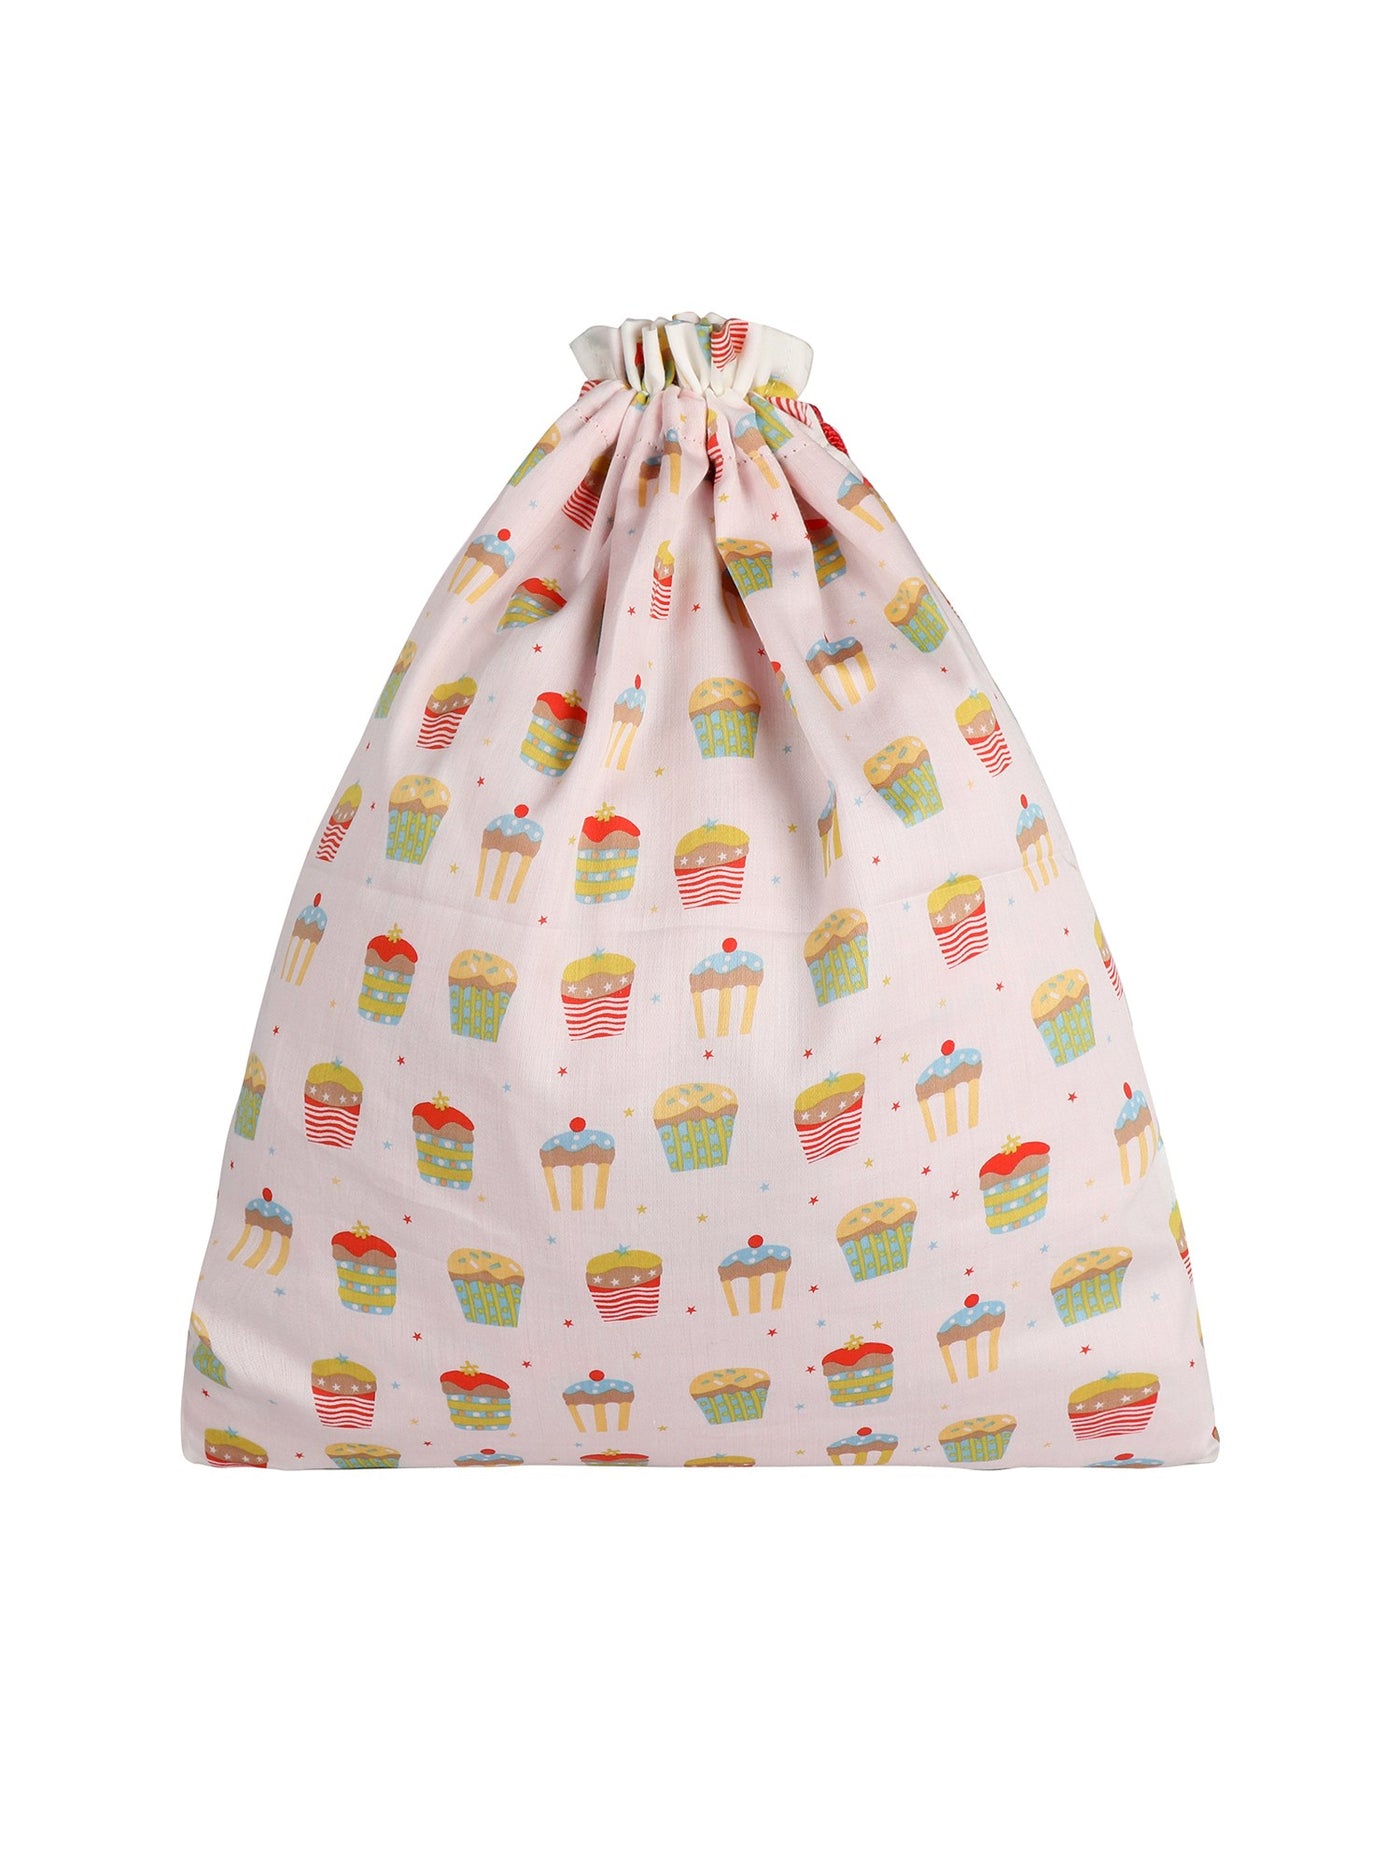 Cupcake Drawstring Bag